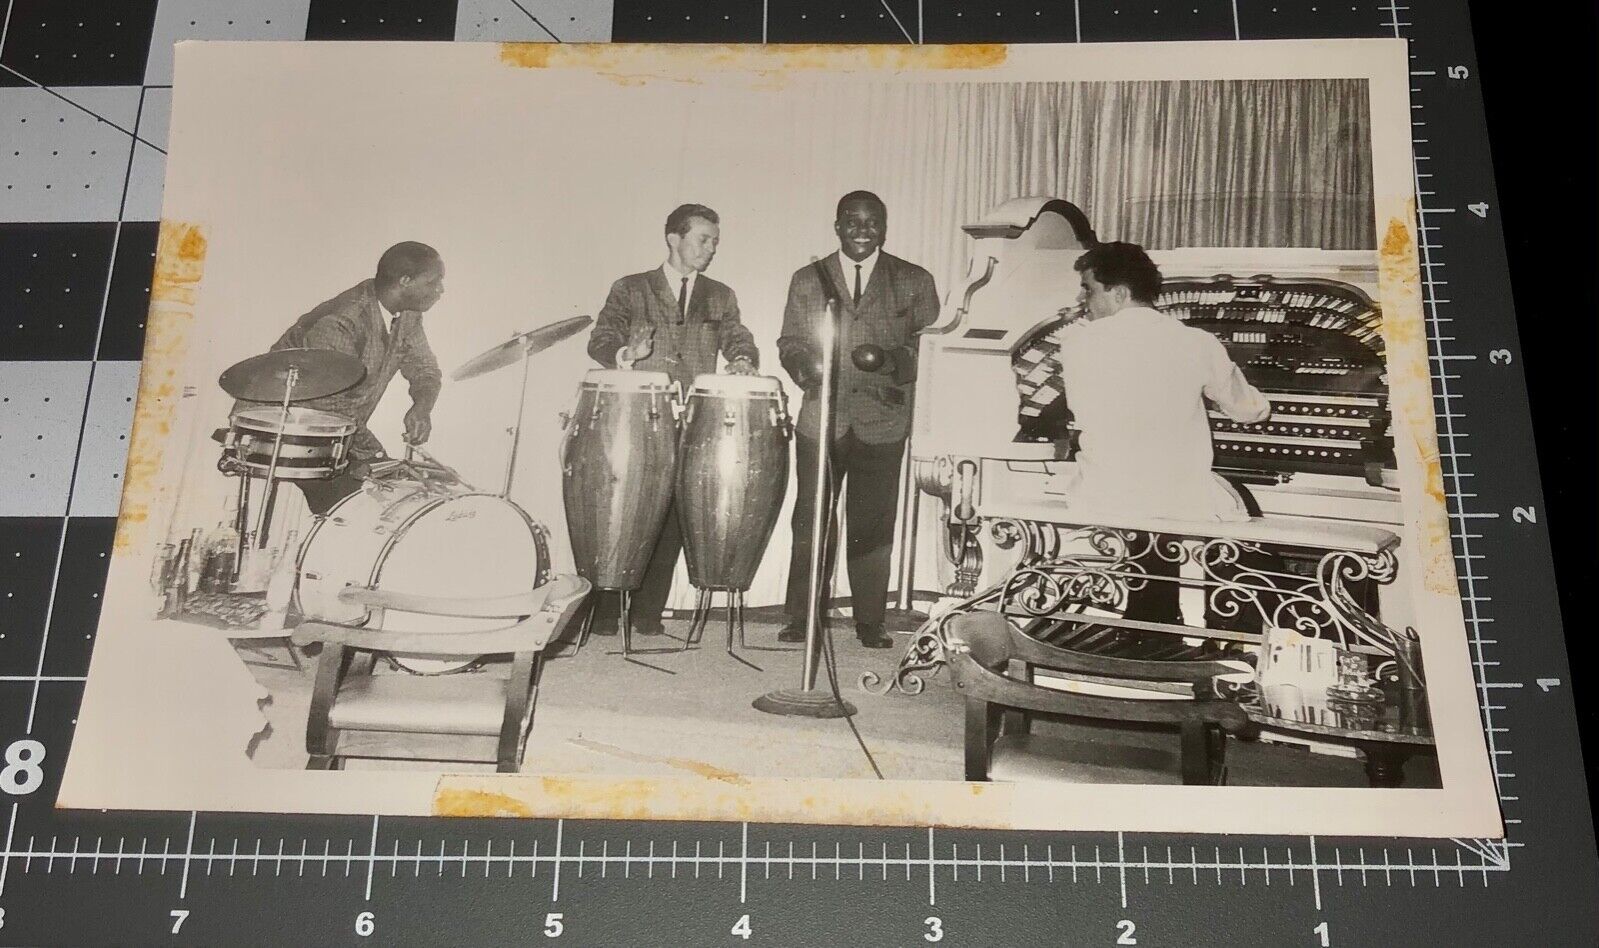 1950s JAZZ BAND Organ Drums BONGO African American Black Men MUSIC Vintage PHOTO